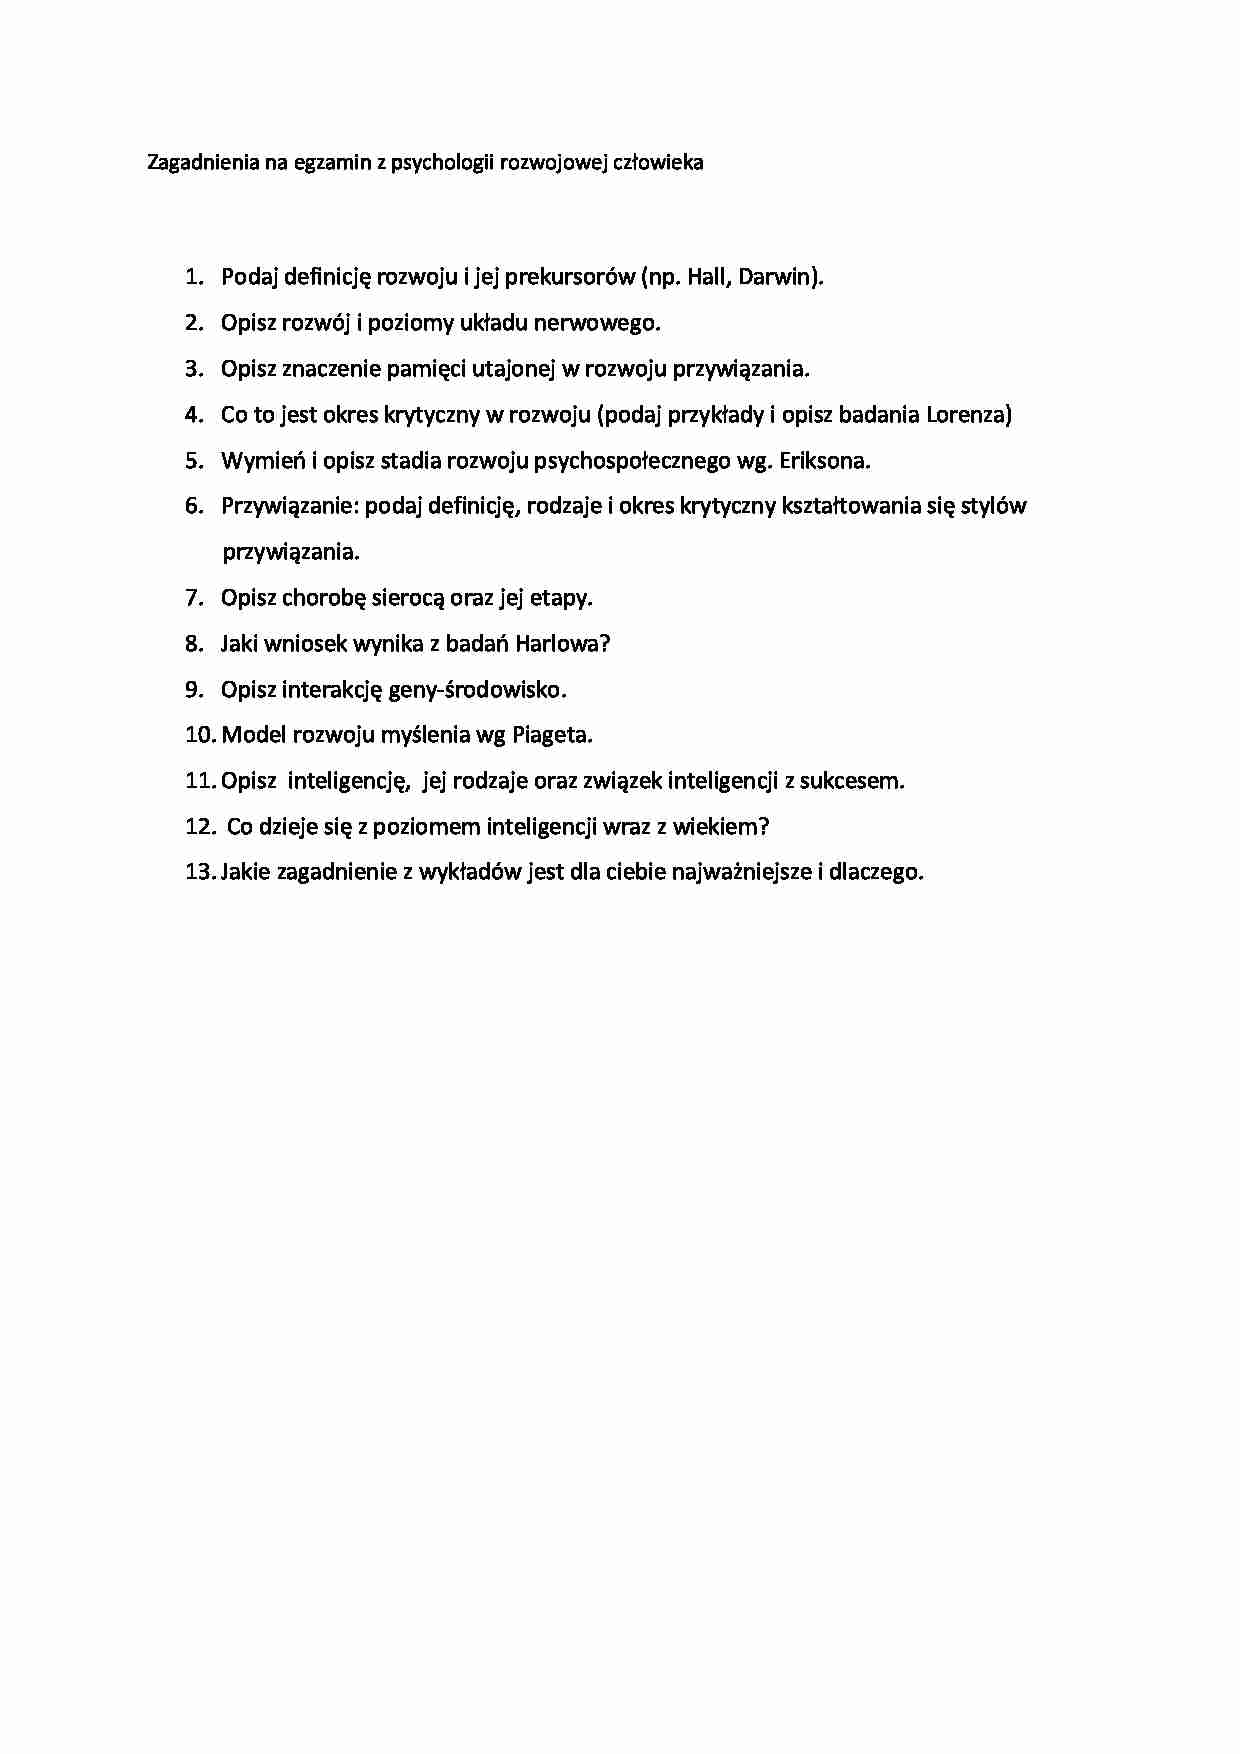 Psychologiar rozwoju czlowieka - zagadnienia na egzamin - strona 1